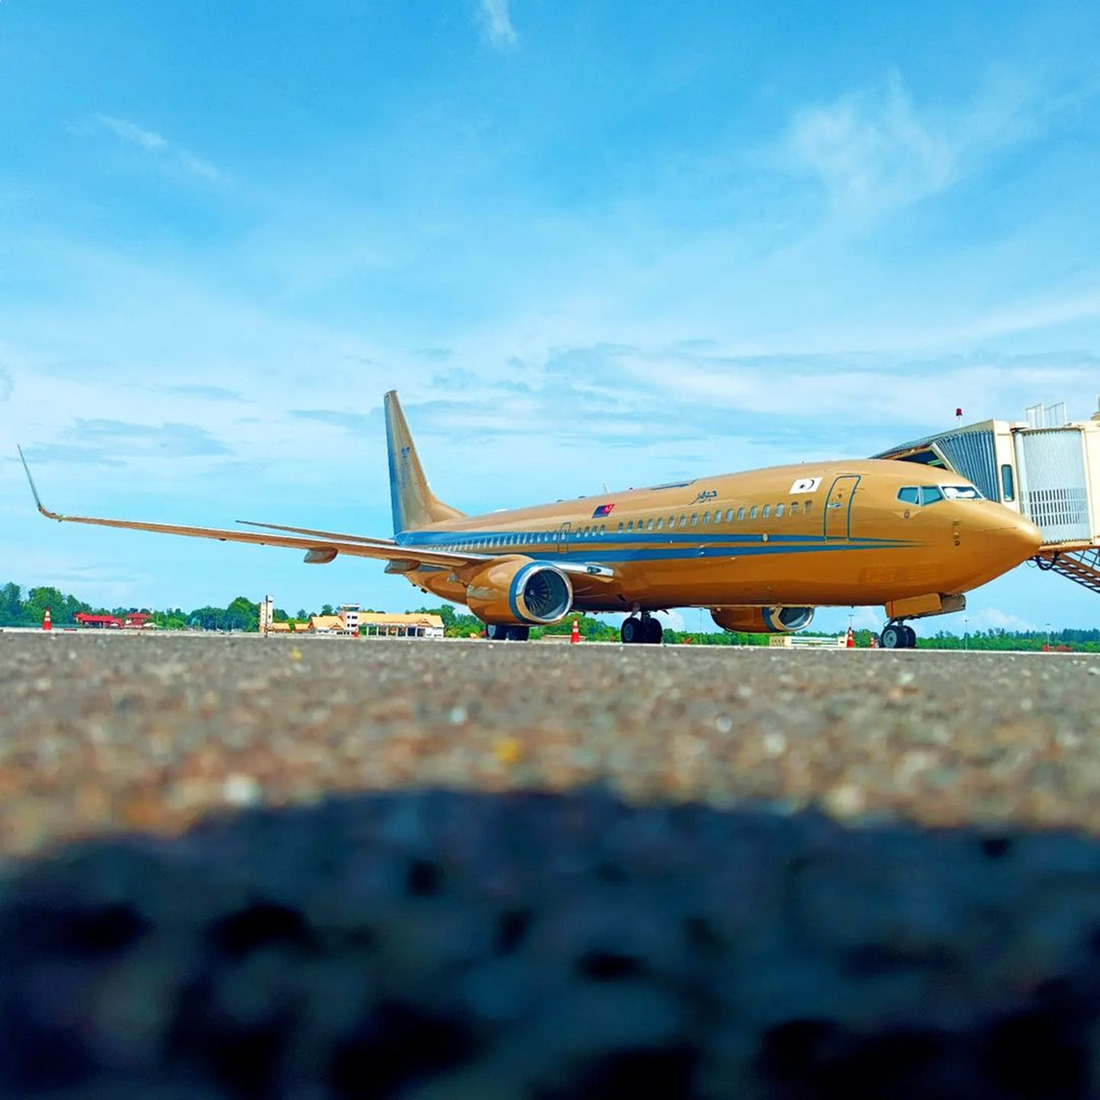 Chiếc Boeing 737 được sơn vàng nổi bật cùng với cờ Johor trên thân - Ảnh: malaysiaplanespotter/Instagram